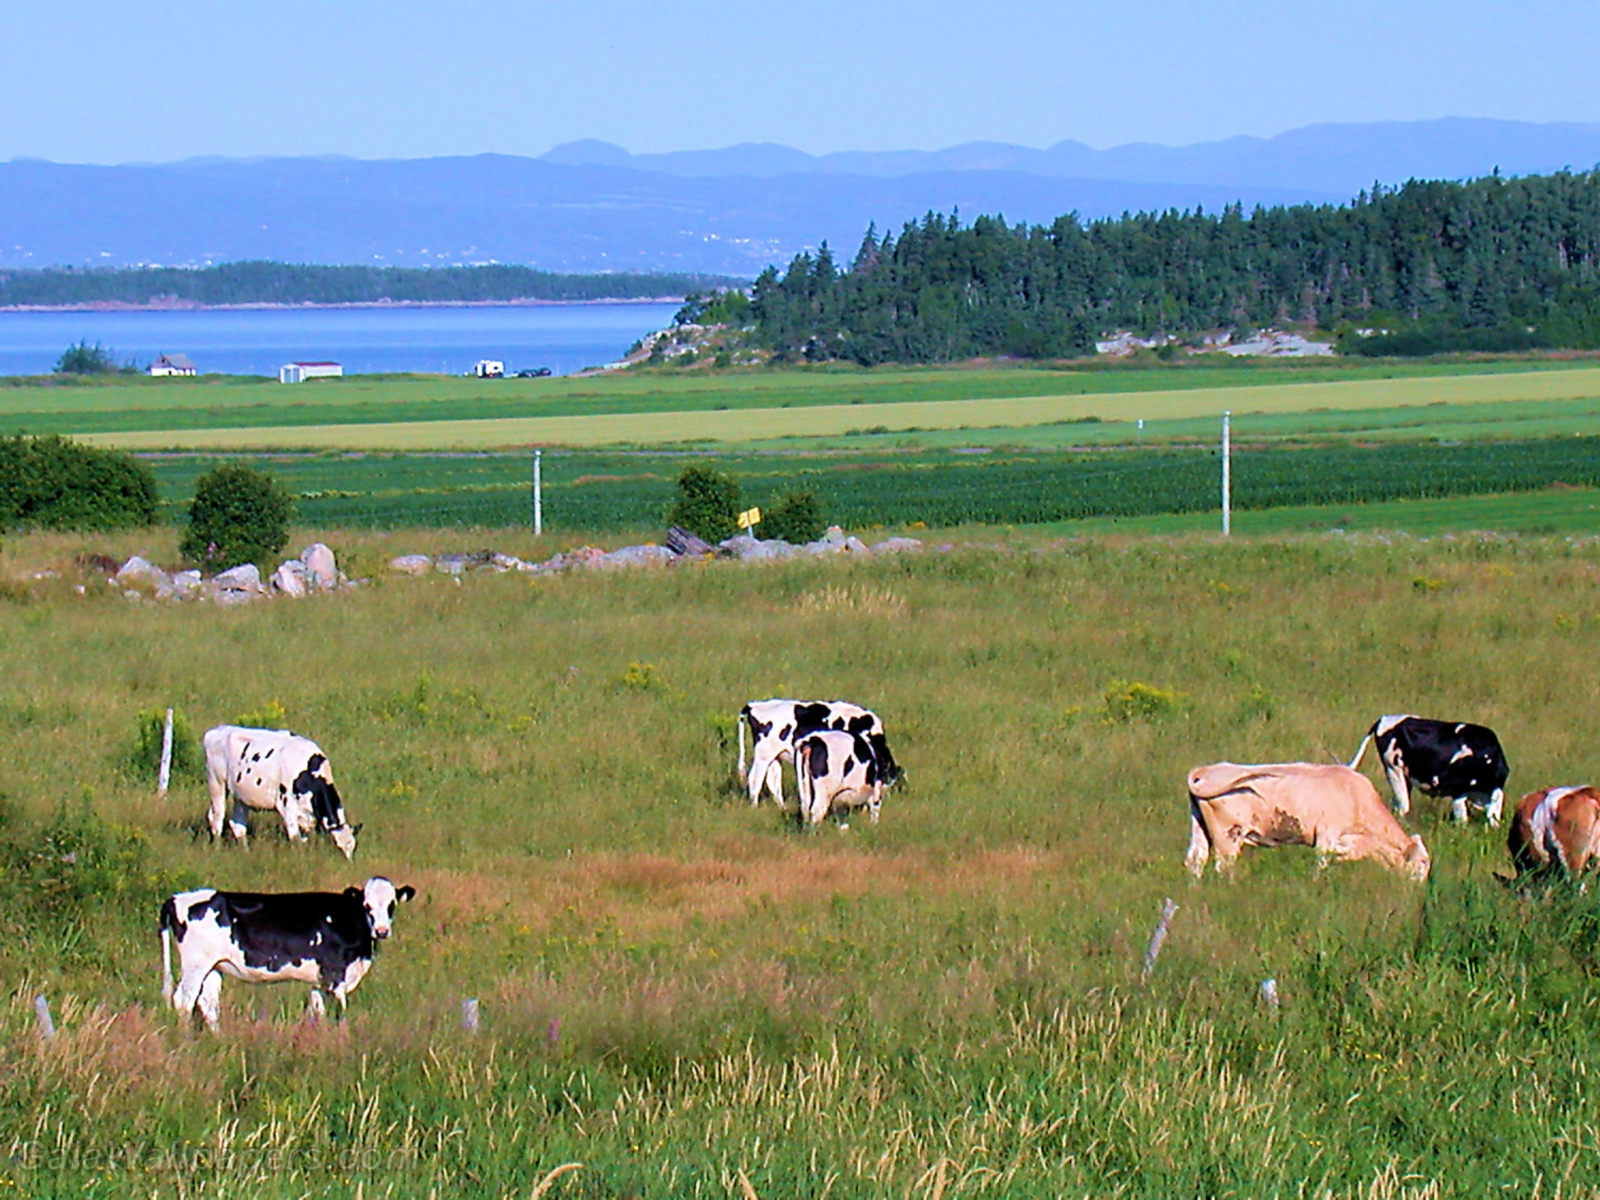 Vaches près du fleuve St-Laurent dans Kamouraska - Fonds d'écran gratuits